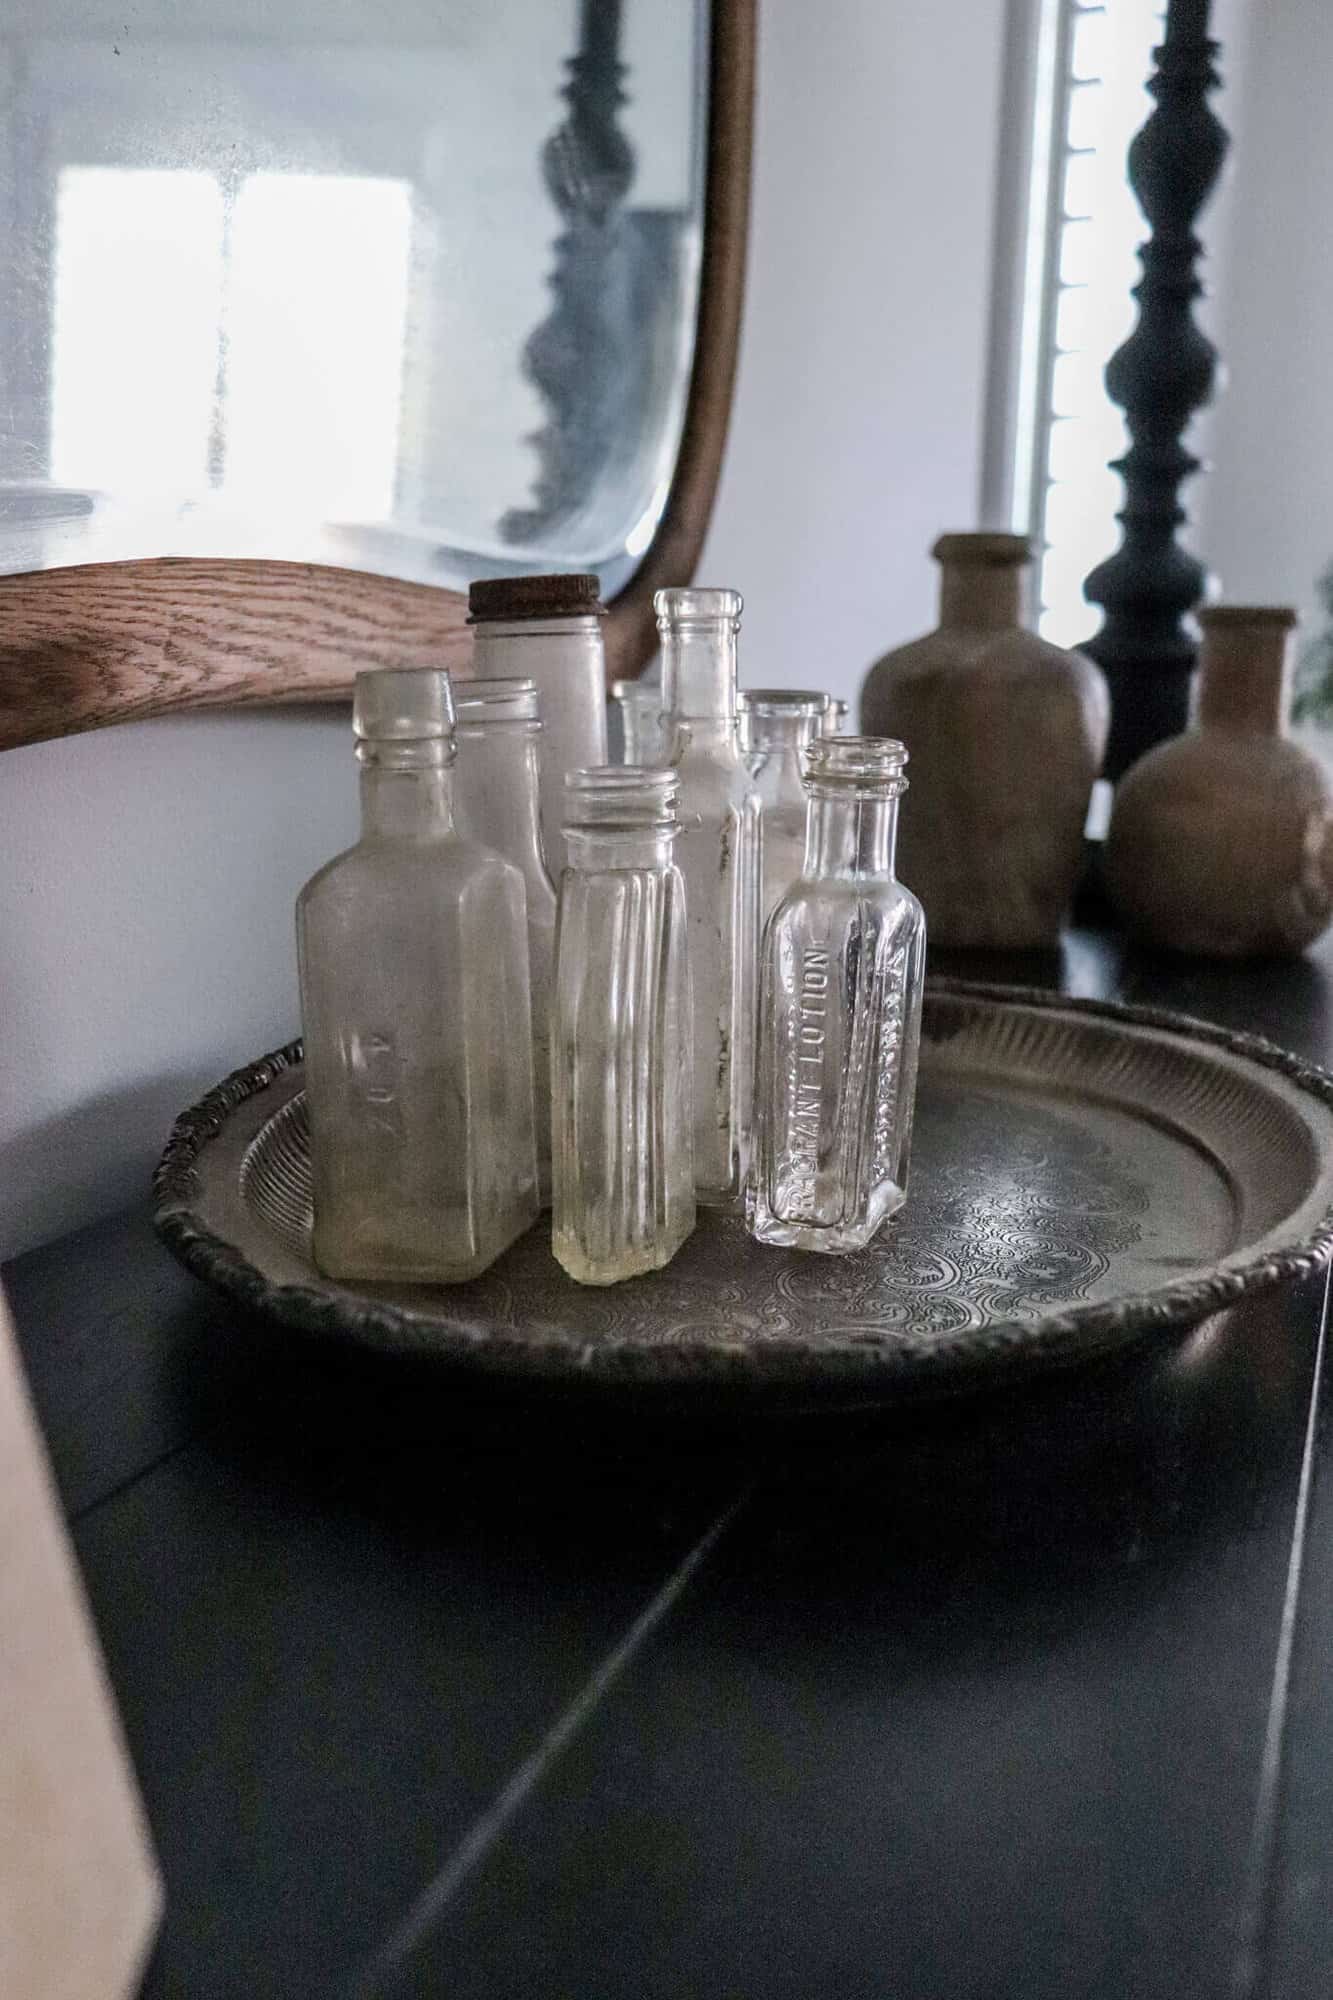 Old silver tray with vintage medicine bottles sitting on a black dresser